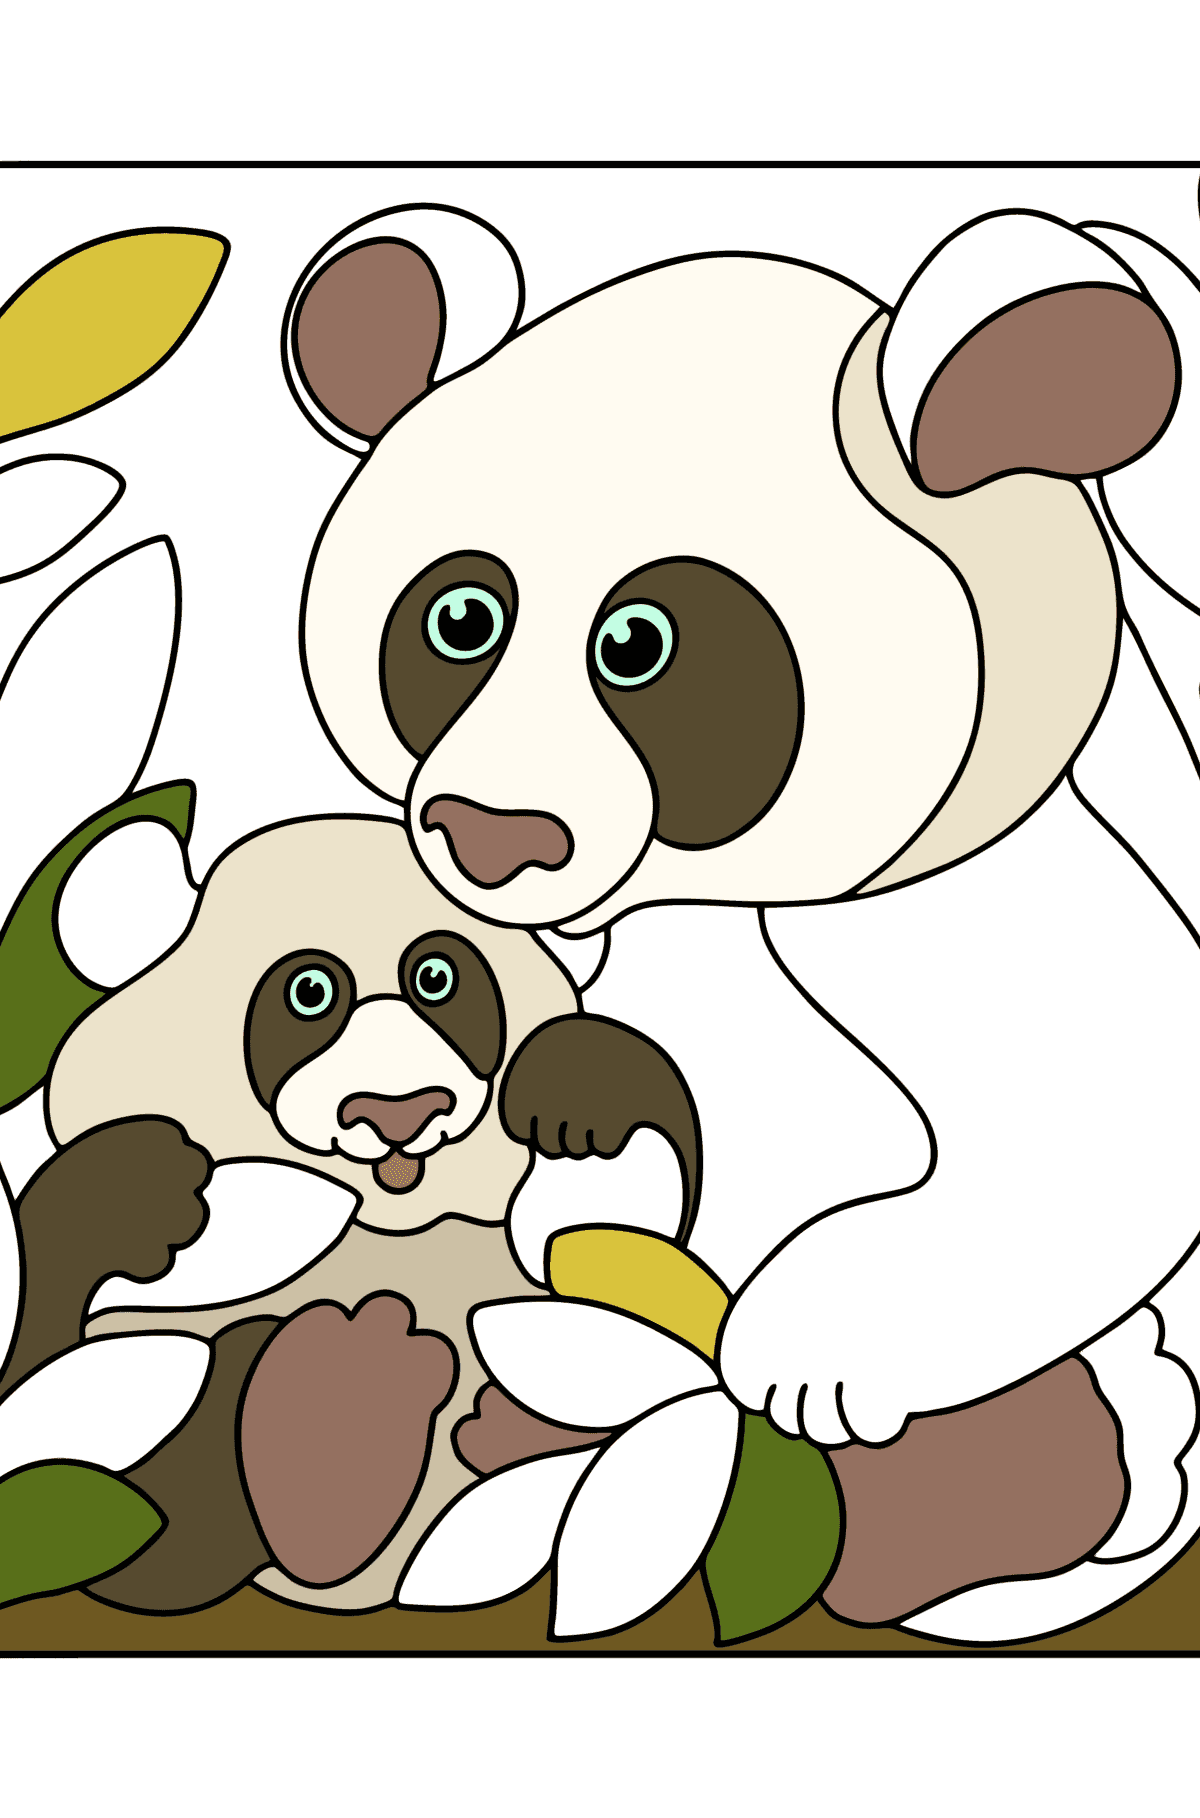 Disegno di Panda gigante con un cucciolo da colorare - Disegni da colorare per bambini